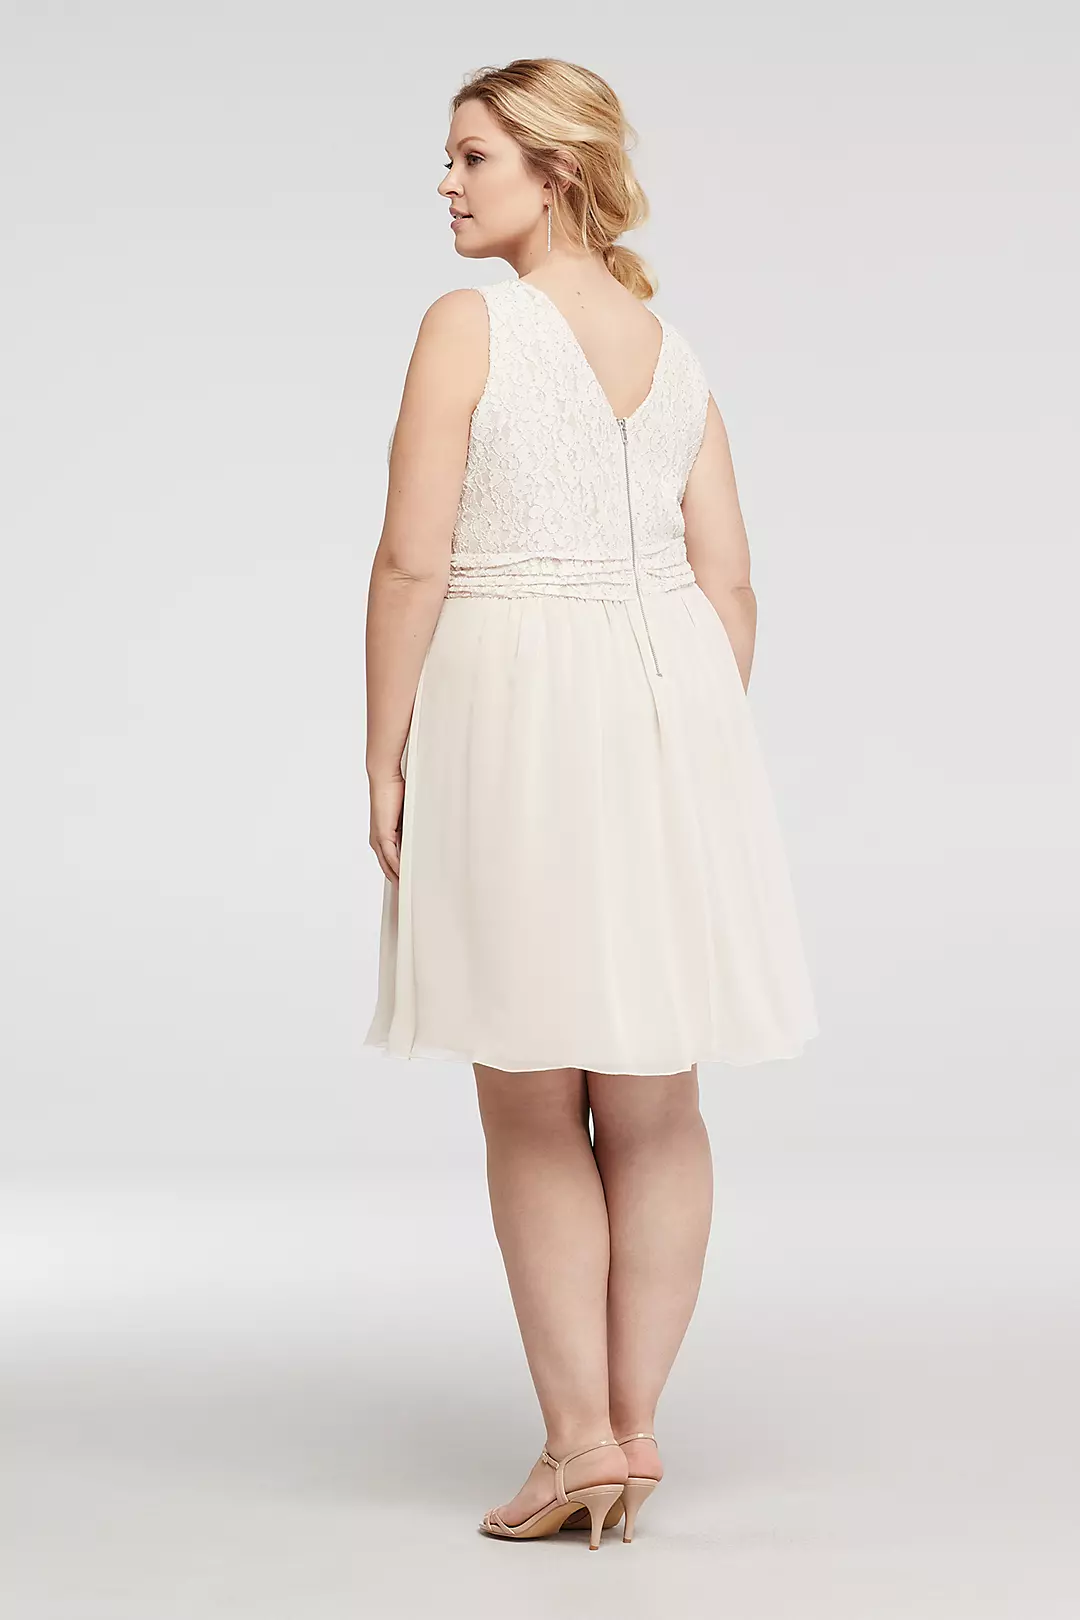 Glitter Lace Tank Dress with Short Chiffon Skirt Image 2